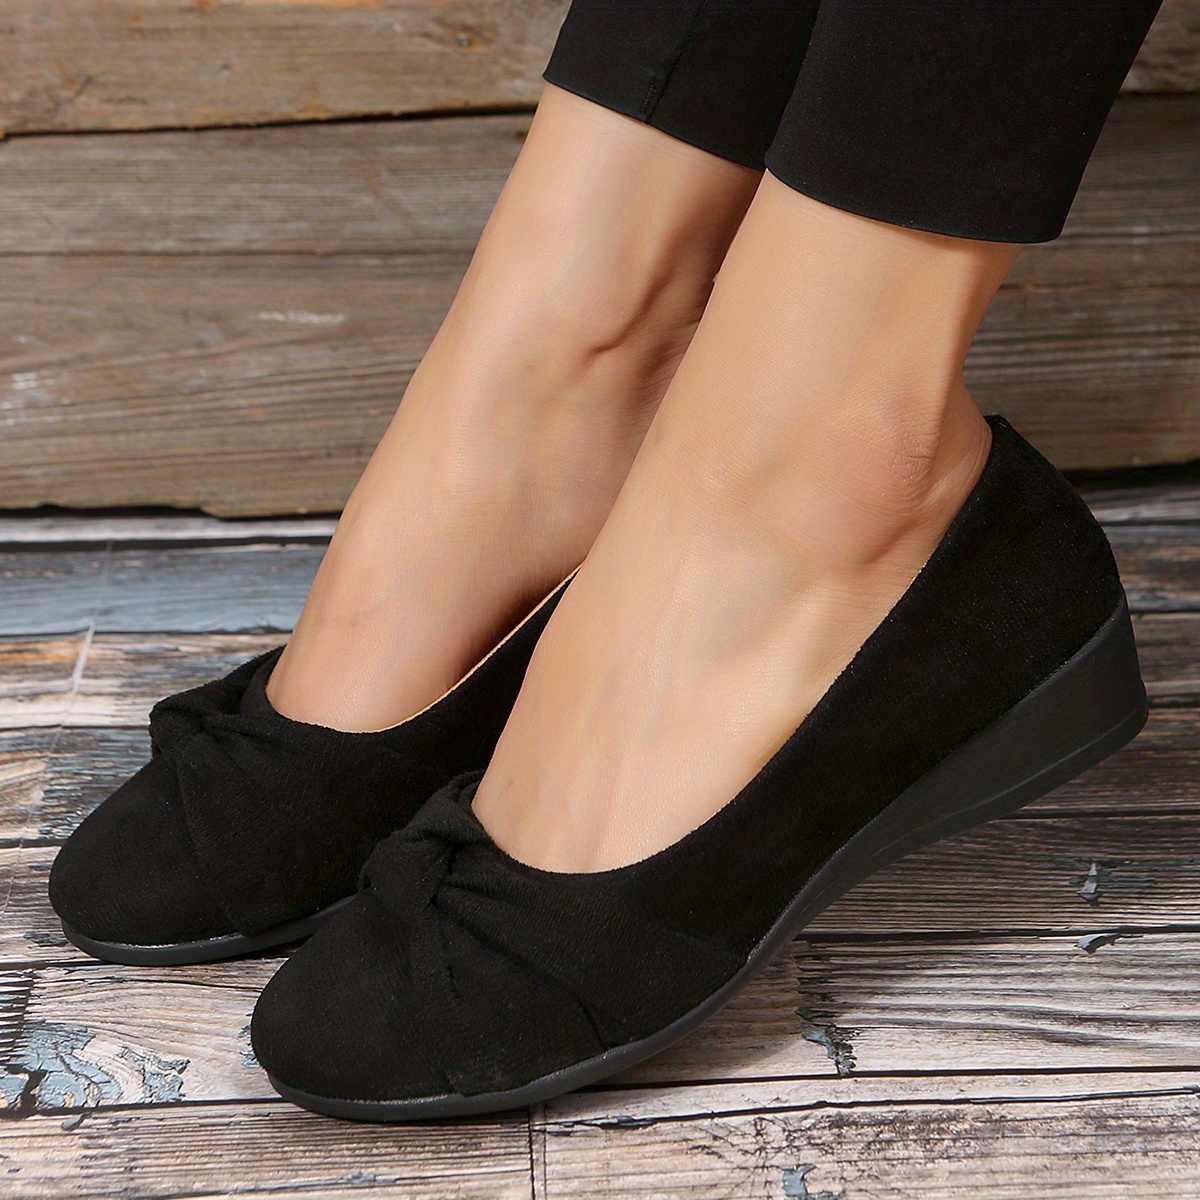 Deportivos vestir negros ✓ Zapatos mujer cómodos NOTTON